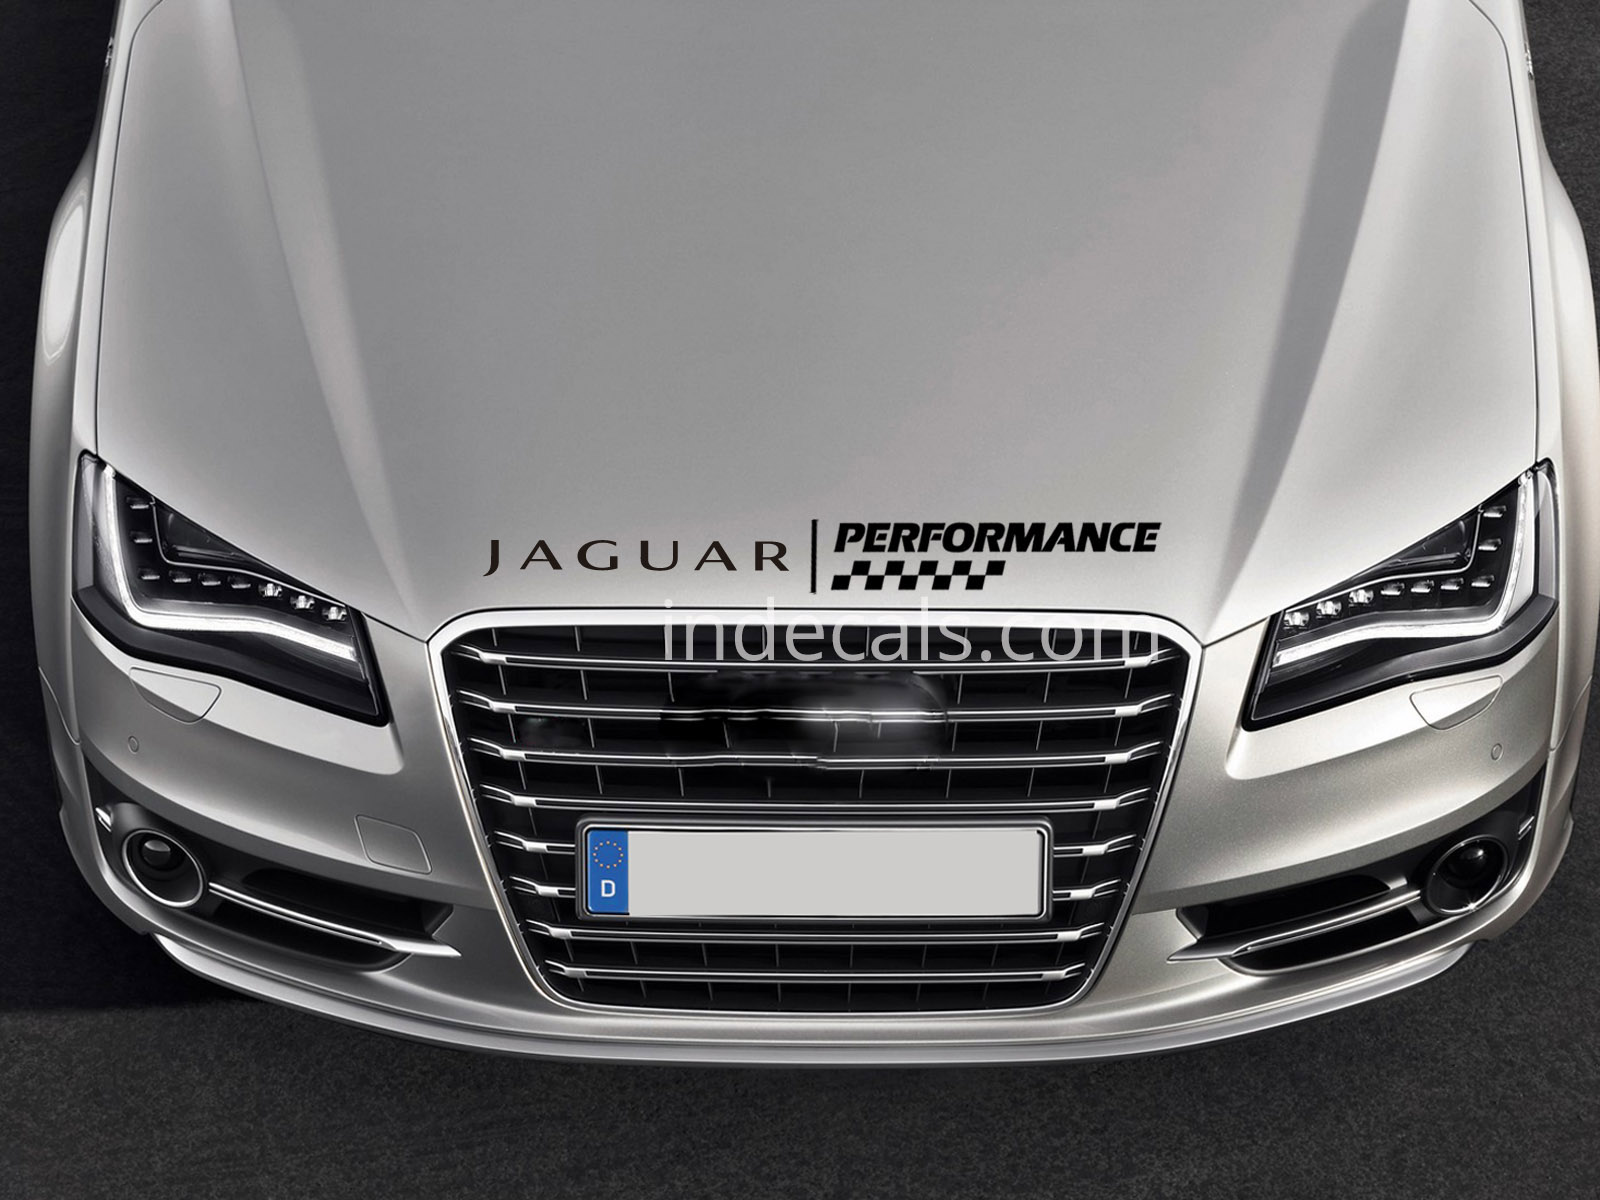 1 x Jaguar Performance Sticker for Bonnet - Black